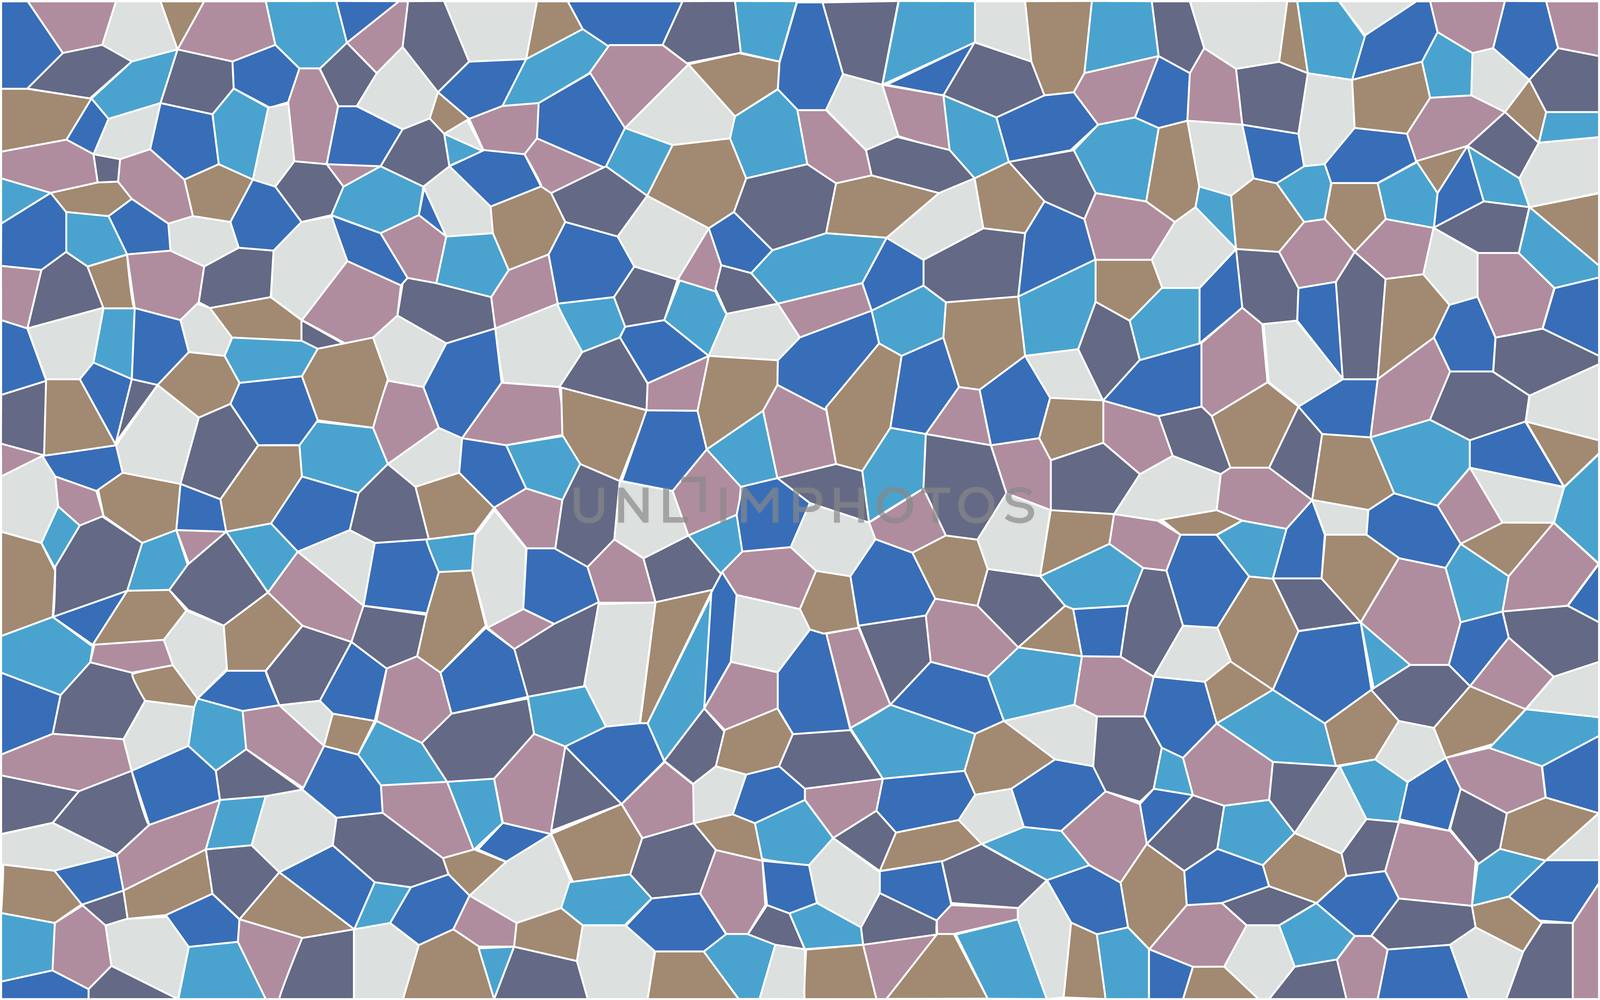 Mosaic Pattern by Bigalbaloo